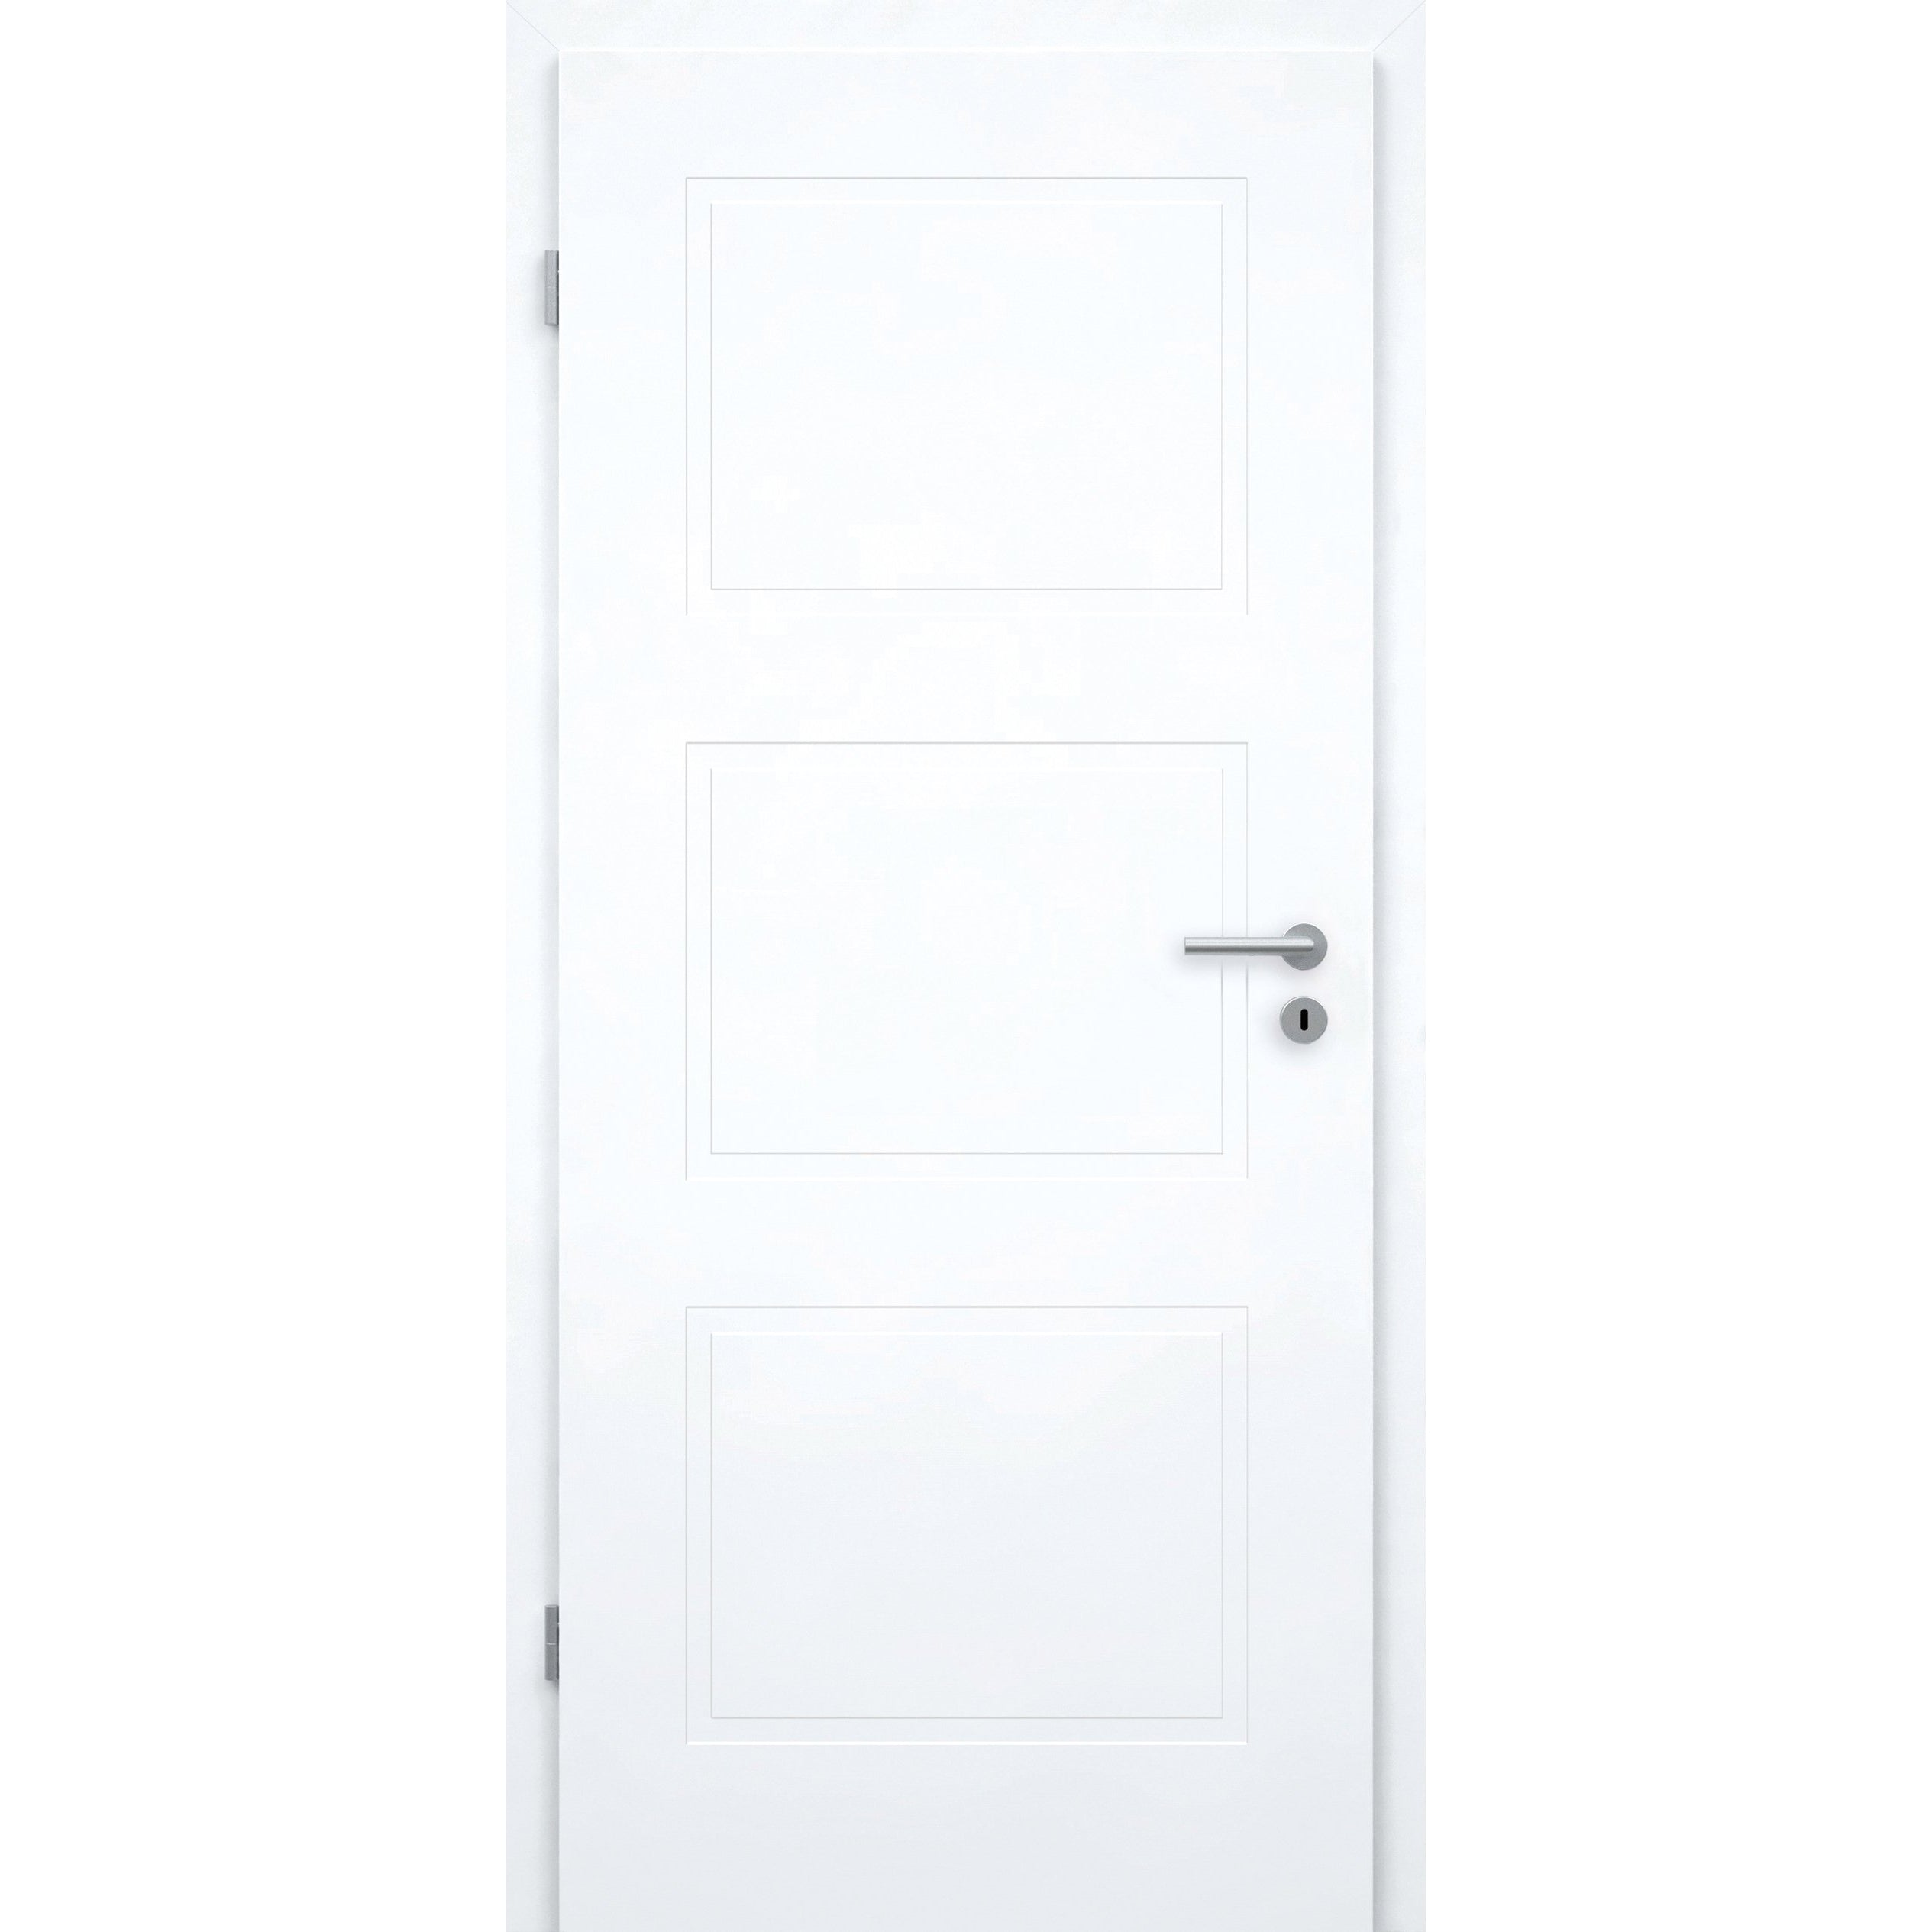 Wohnungseingangstür mit Zarge brillant-weiß 3 Kassetten Designkante SK2 / KK3 - Modell Stiltür M33